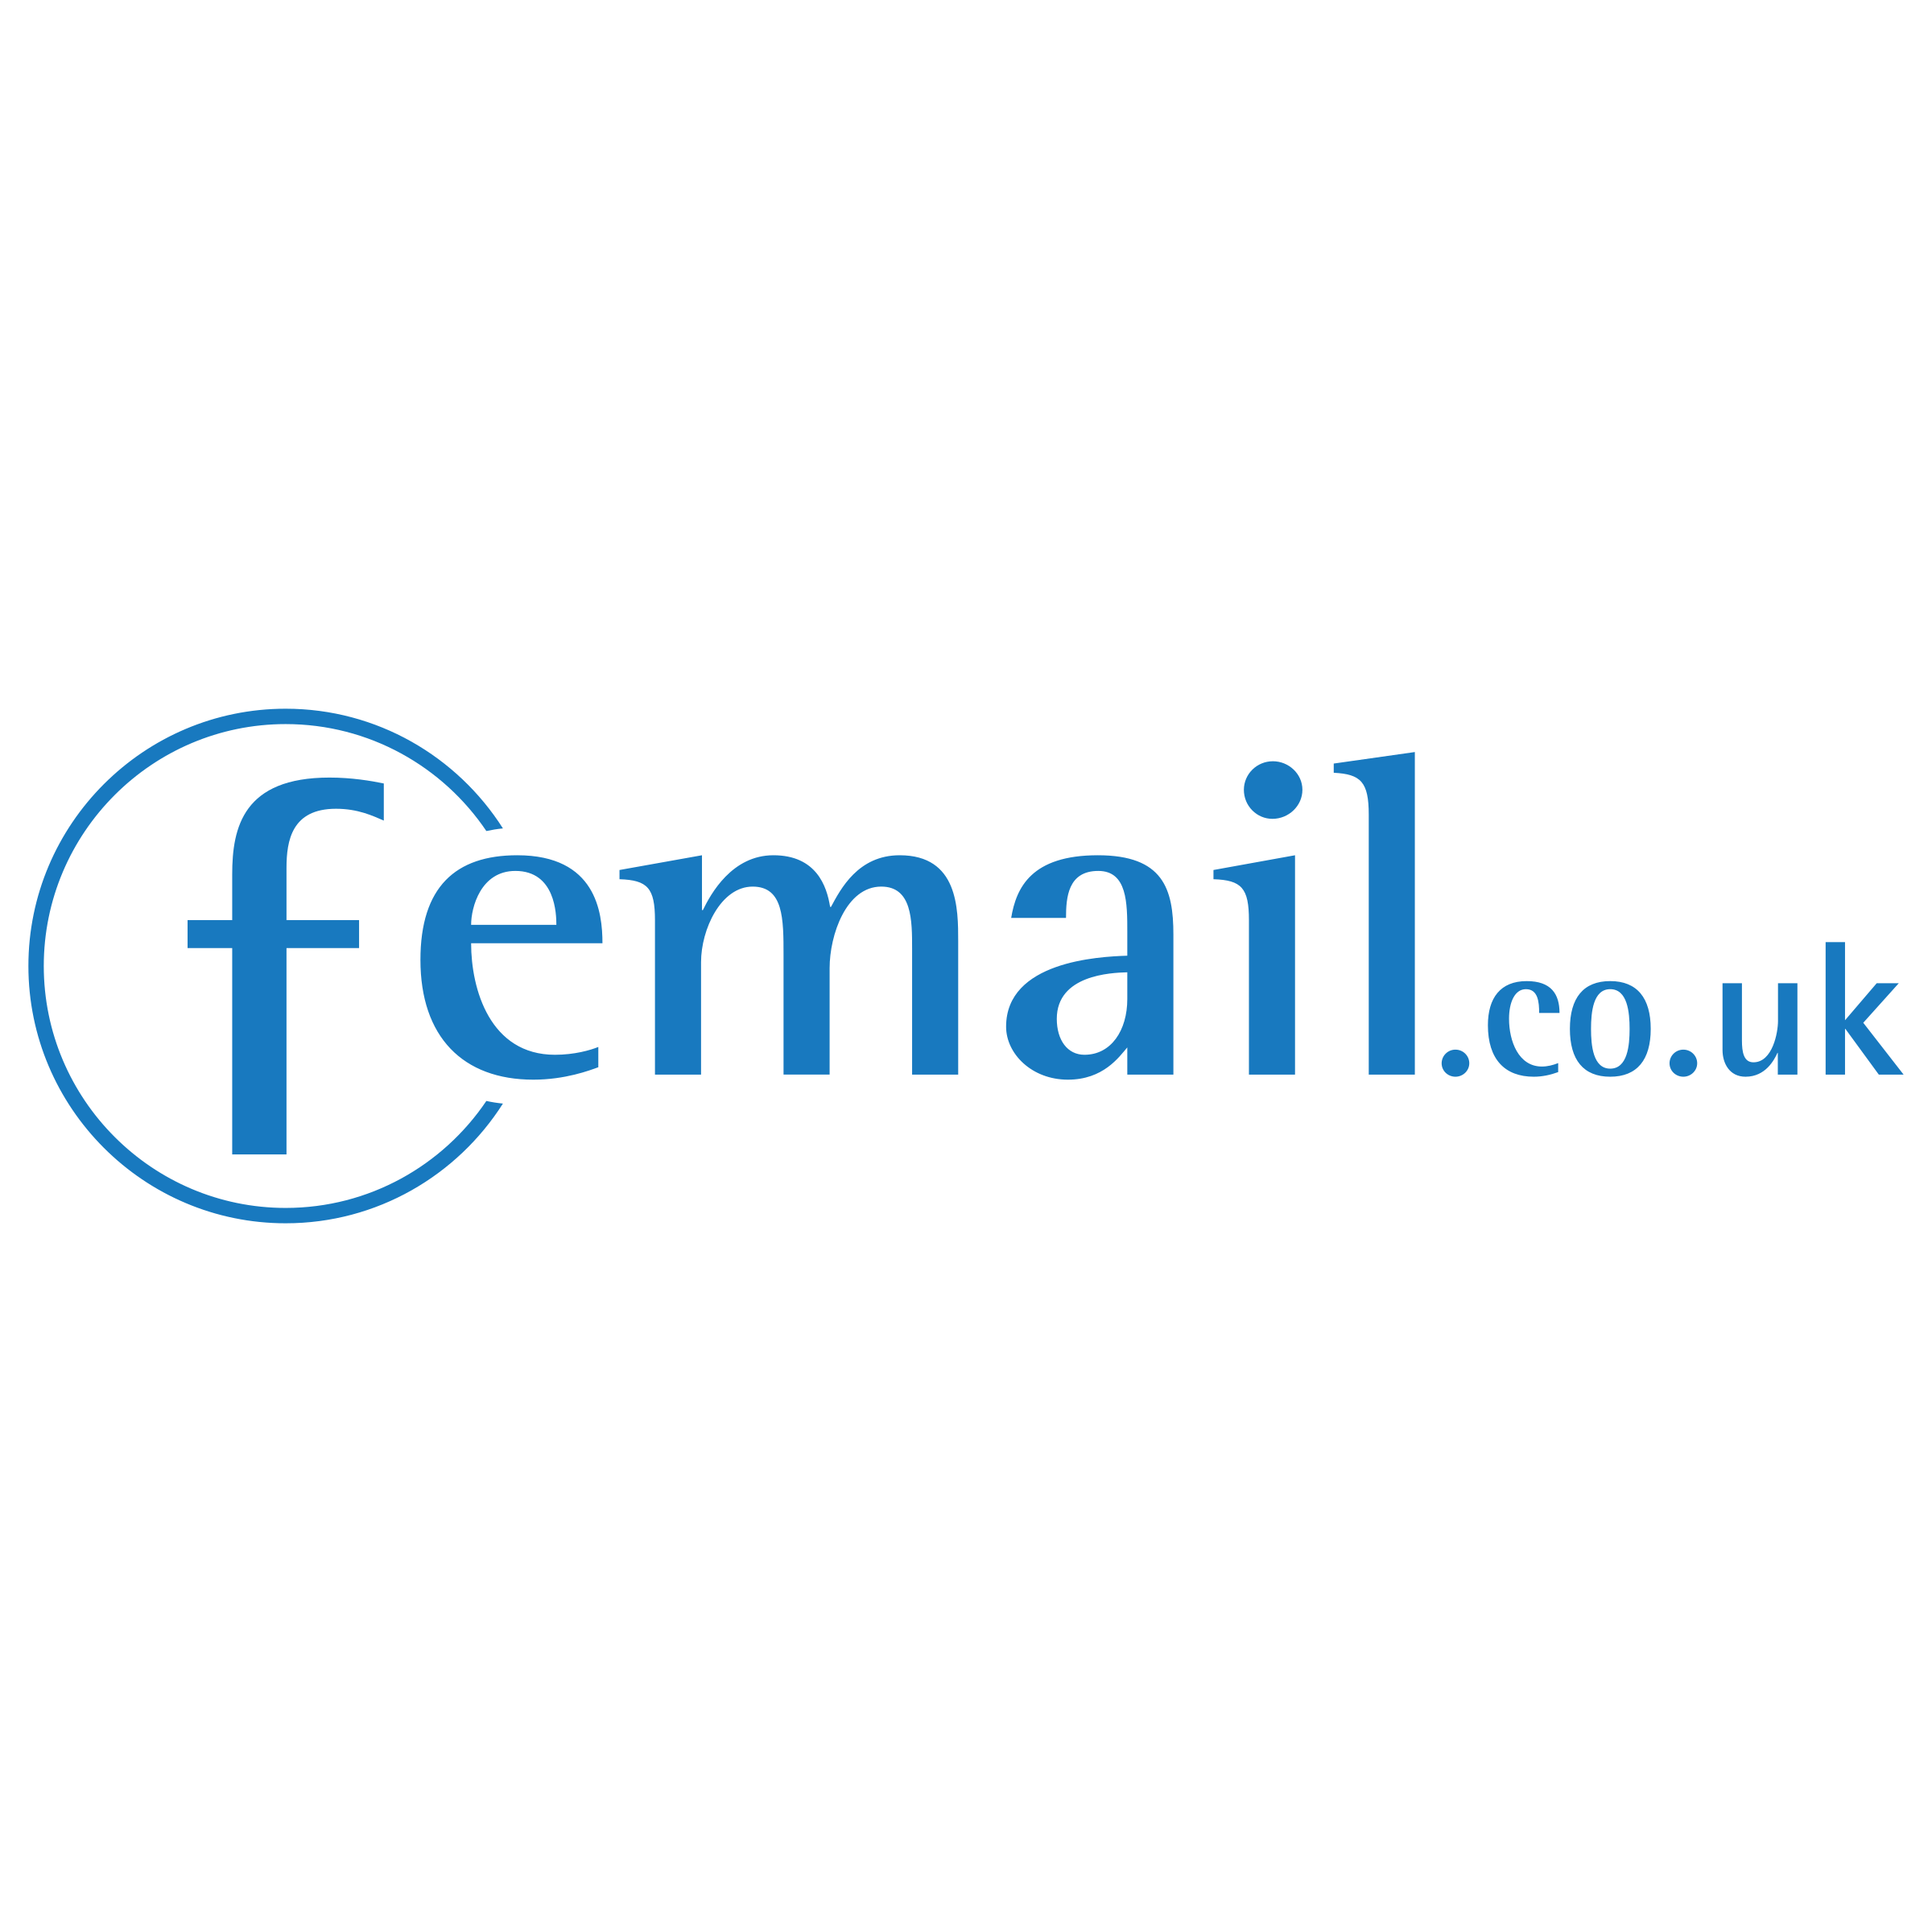 Femail Logo - Femail co uk Logo PNG Transparent & SVG Vector - Freebie Supply